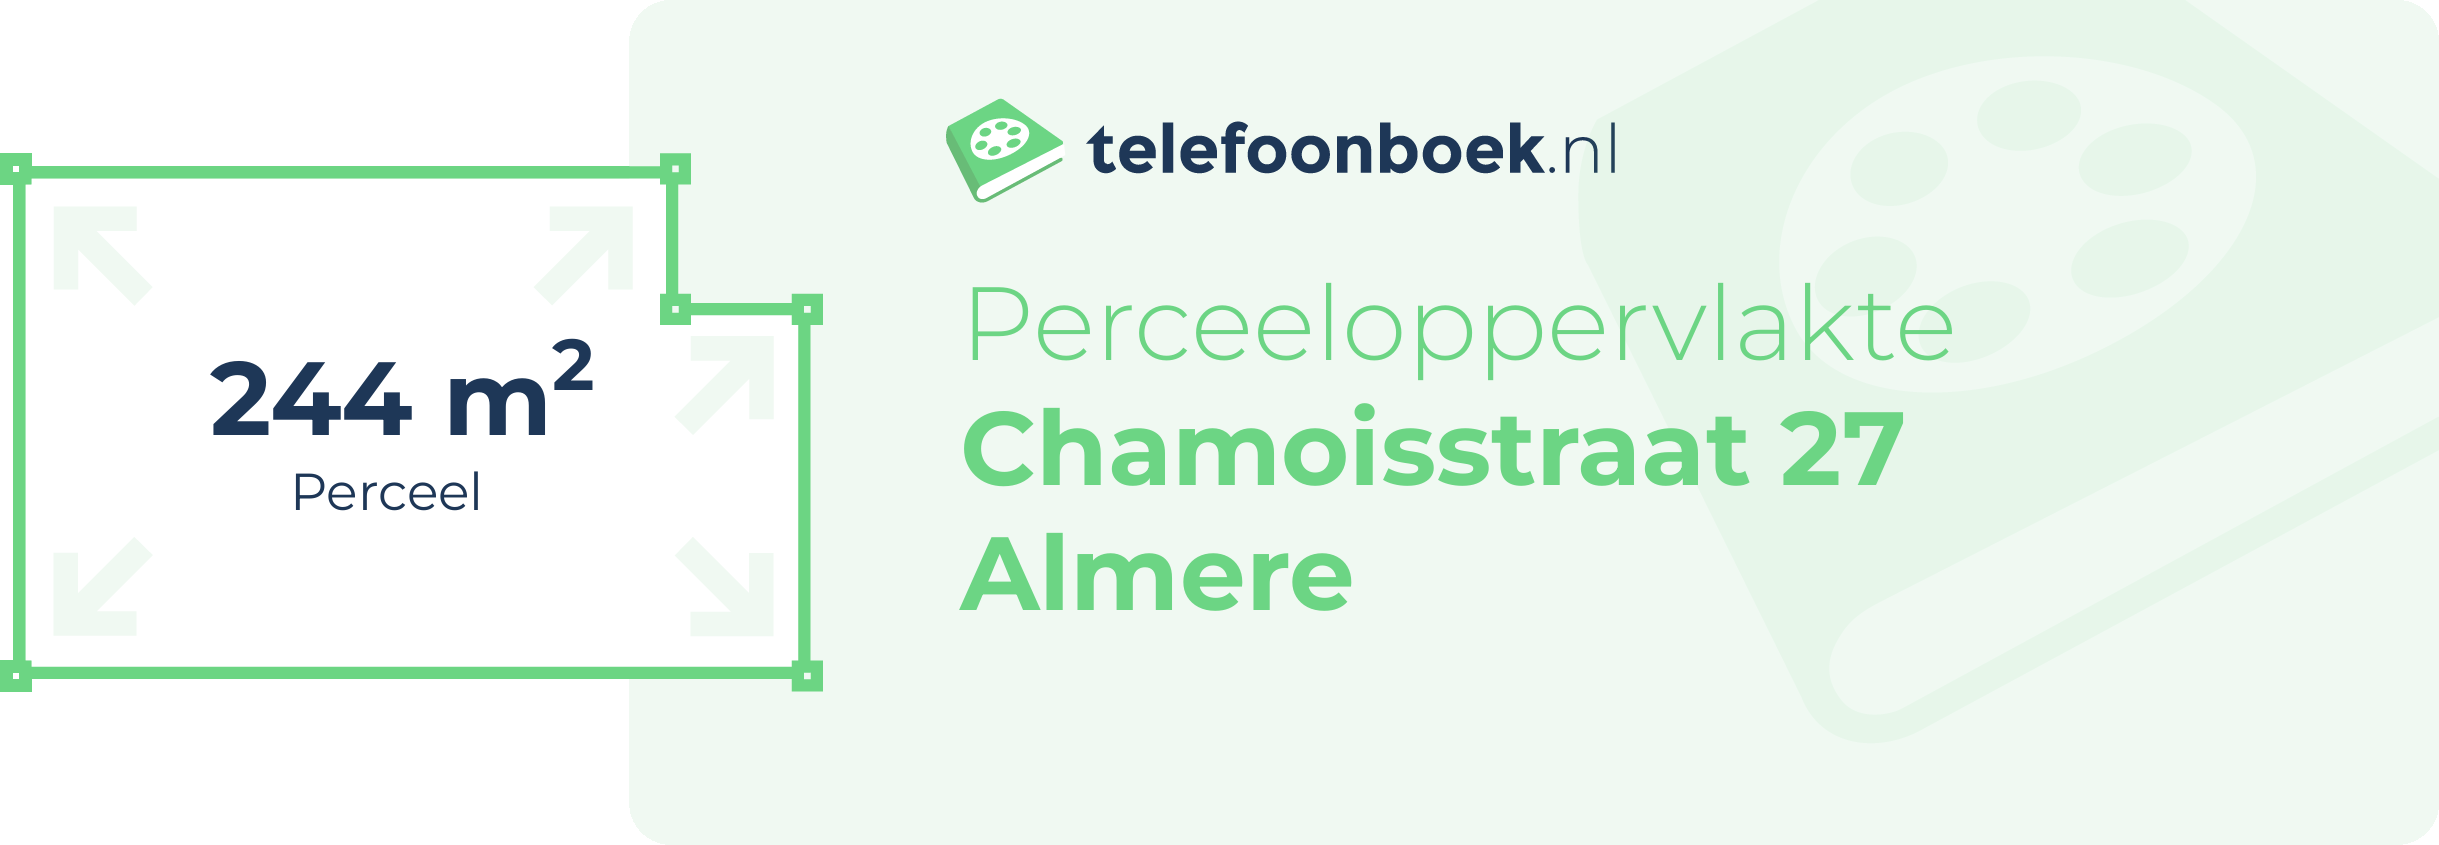 Perceeloppervlakte Chamoisstraat 27 Almere